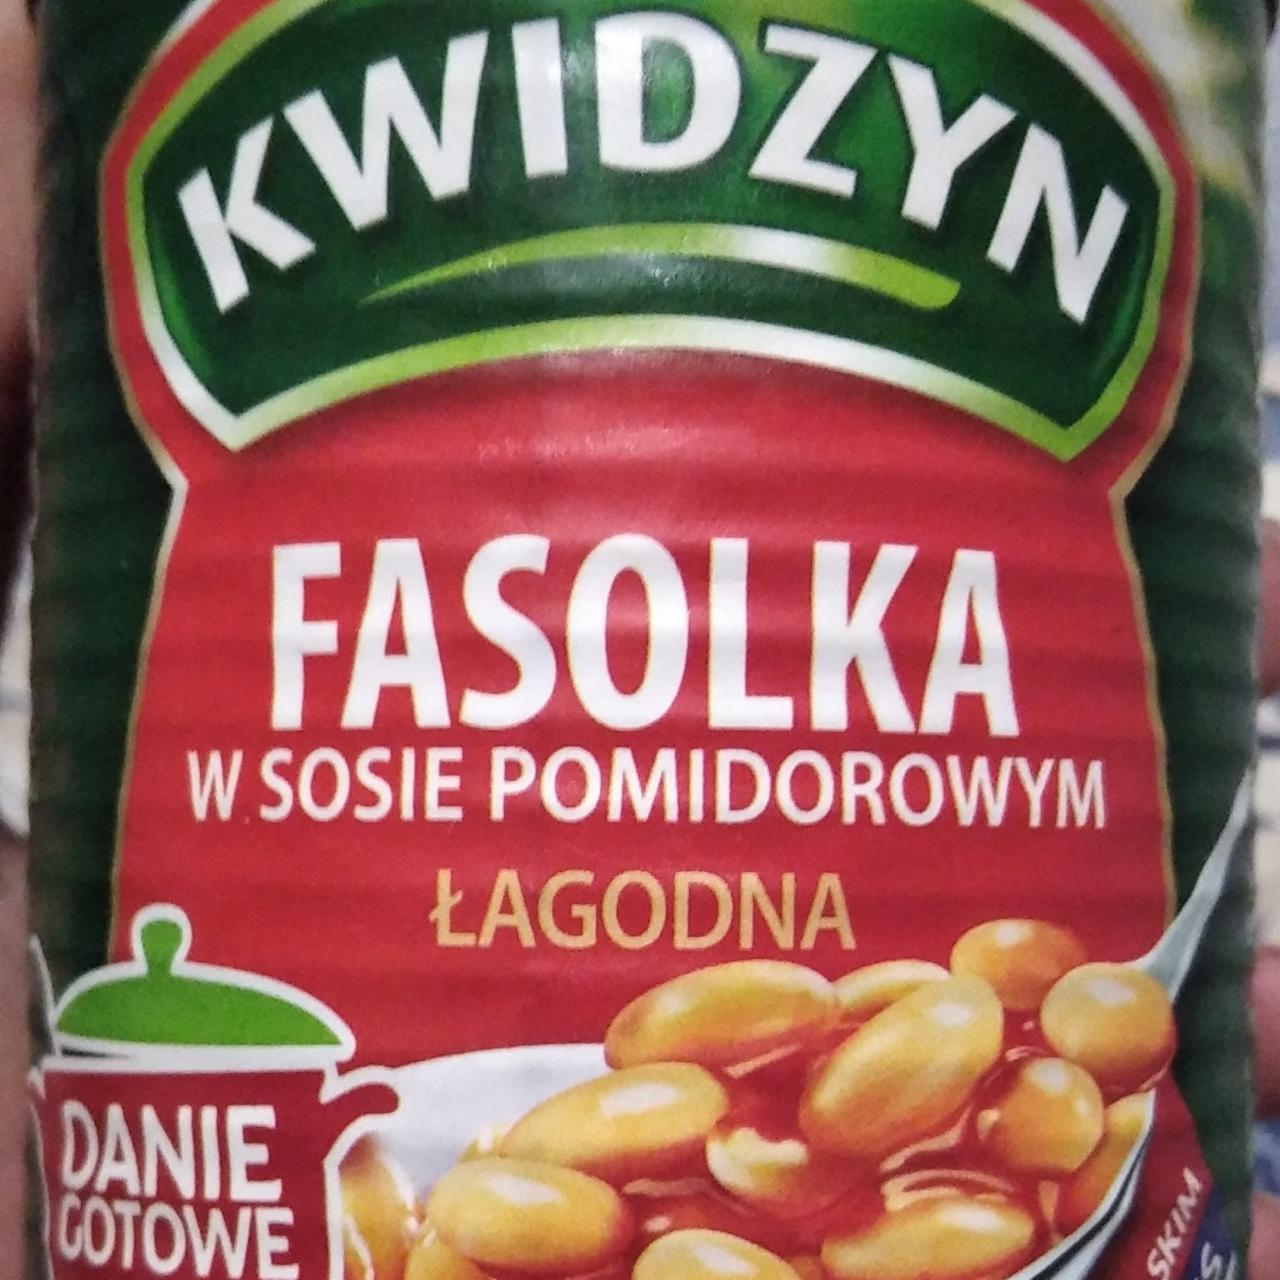 Фото - фасоль в томатном соусе Kwidzyn